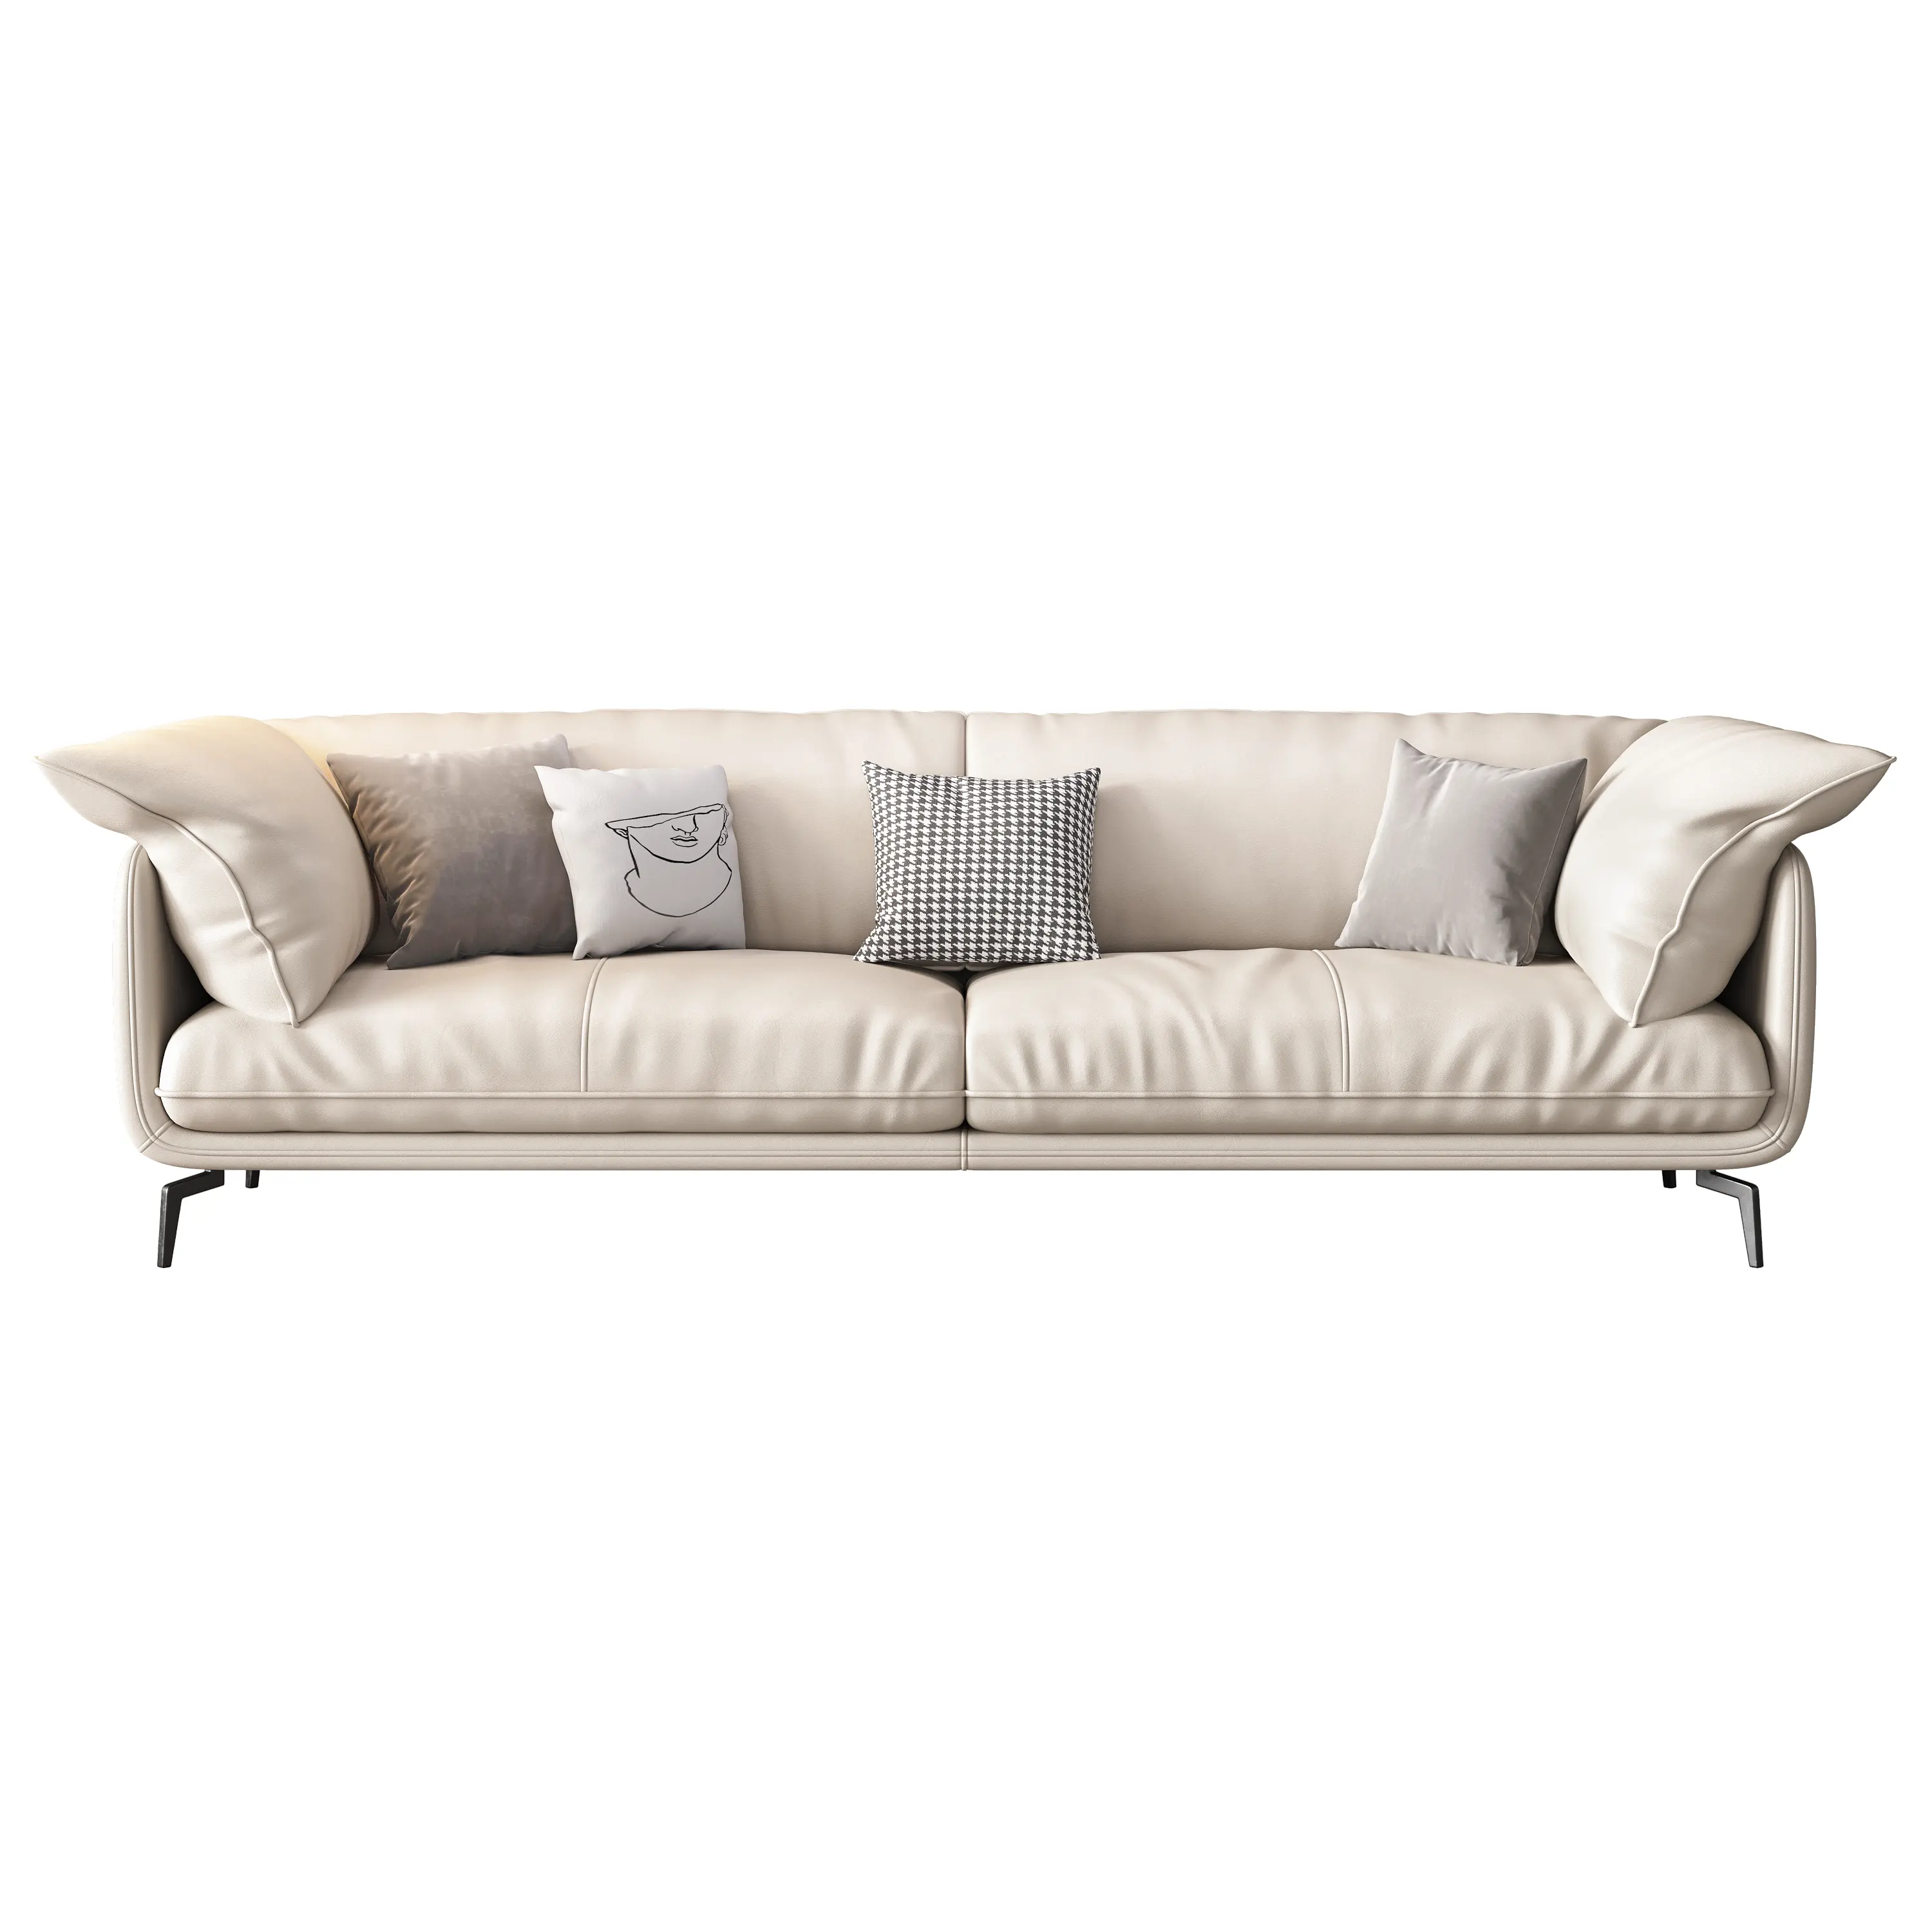 Commercio all'ingrosso di fabbrica di lusso divano bianco tre posti a sedere in morbida pelle mobili soggiorno divano